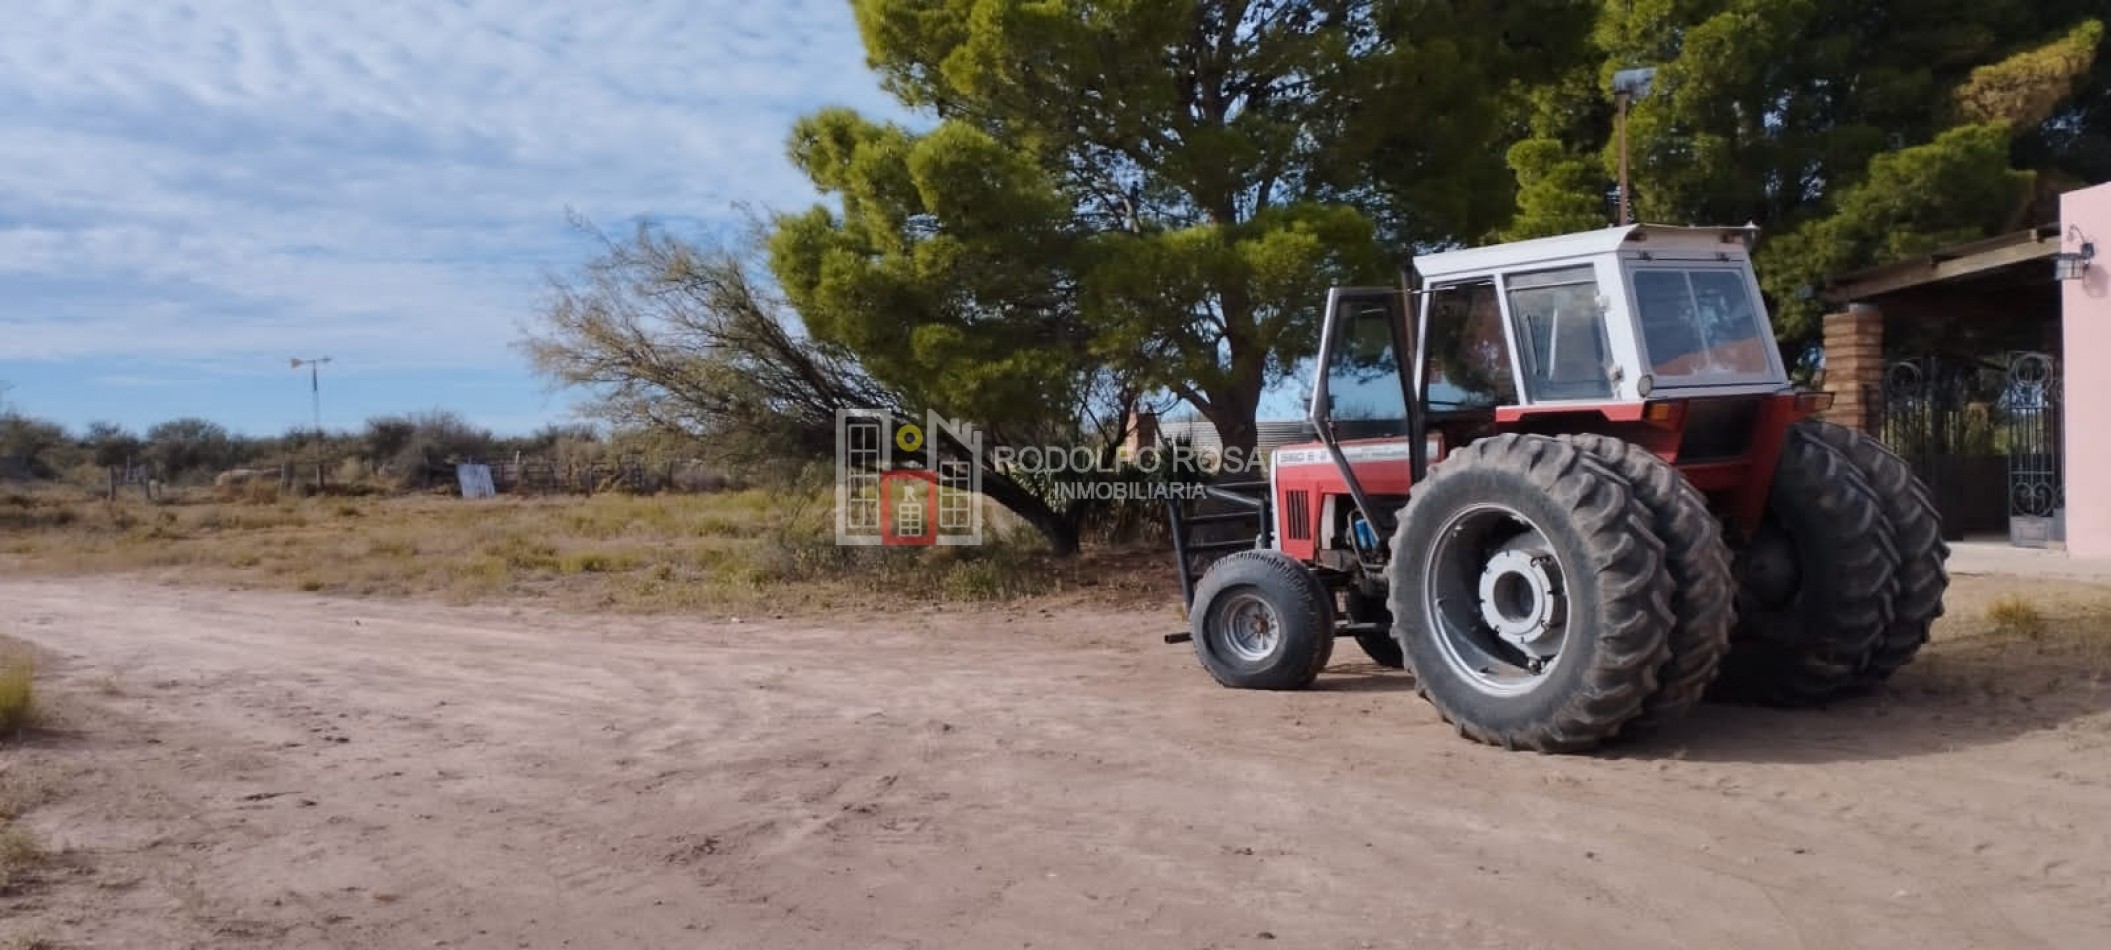 A LA VENTA - en EXCLUSIVIDAD -  5200 hectareas ganaderas en Chacharramendi, La Pampa ideales para COTO DE CAZA